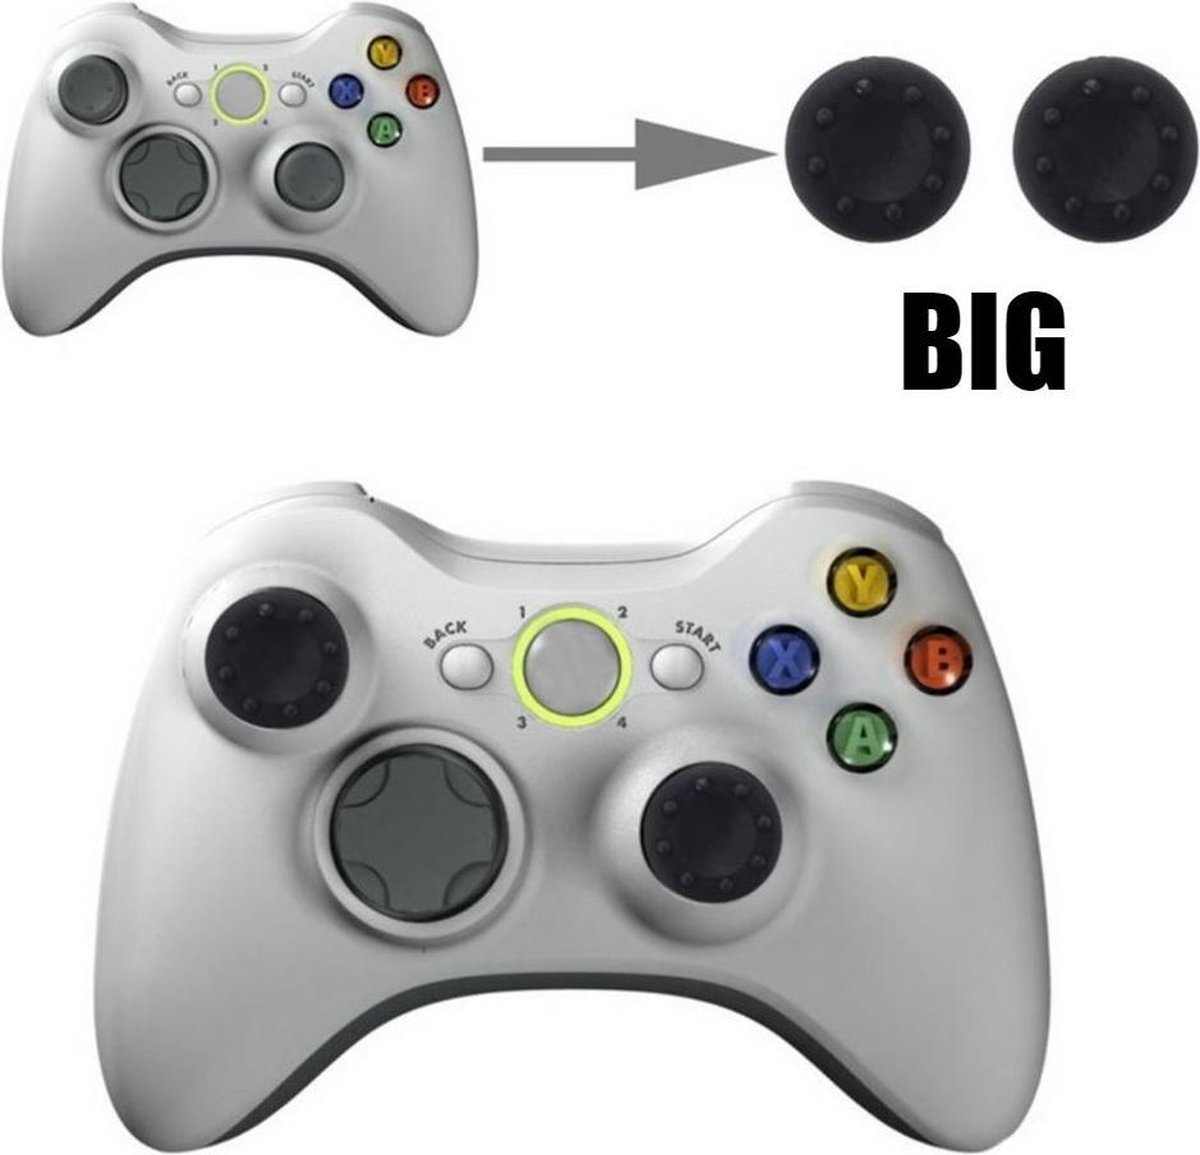 Thumb grips - Controller Thumbgrips - Joystick Cap - Thumbsticks - Thumb Grip Cap voor Playstation PS4 en Xbox - 2 stuks Groot 8 dots extra grip Zwart